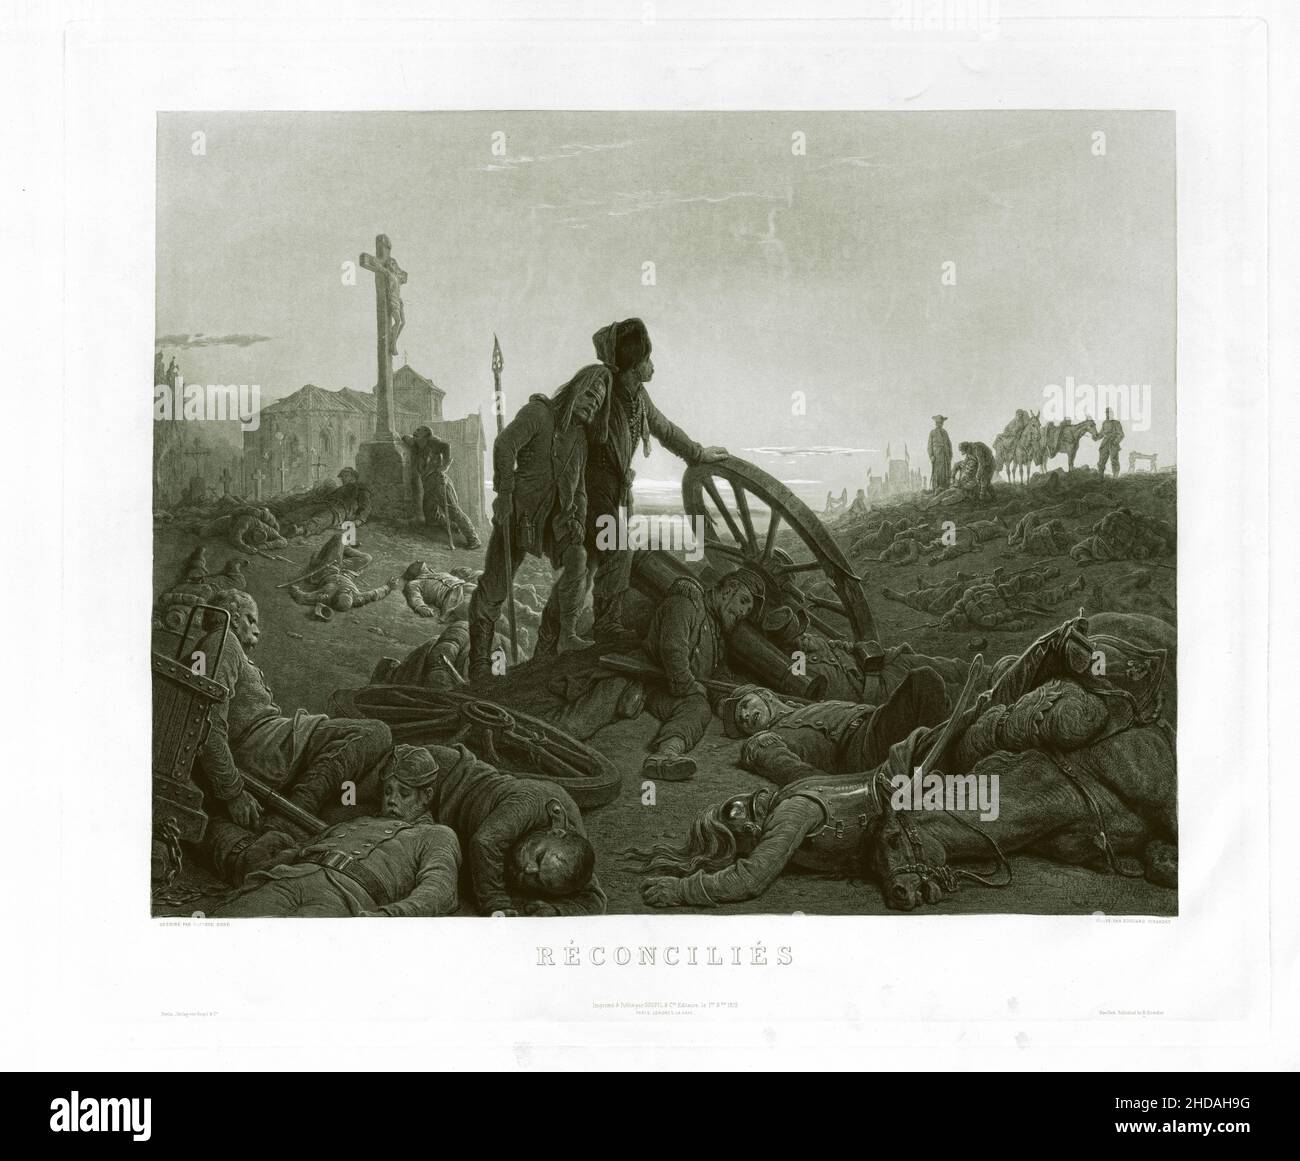 Grabado de la Guerra Franco-Prusiana: Reconciliada. 1872 Foto de stock